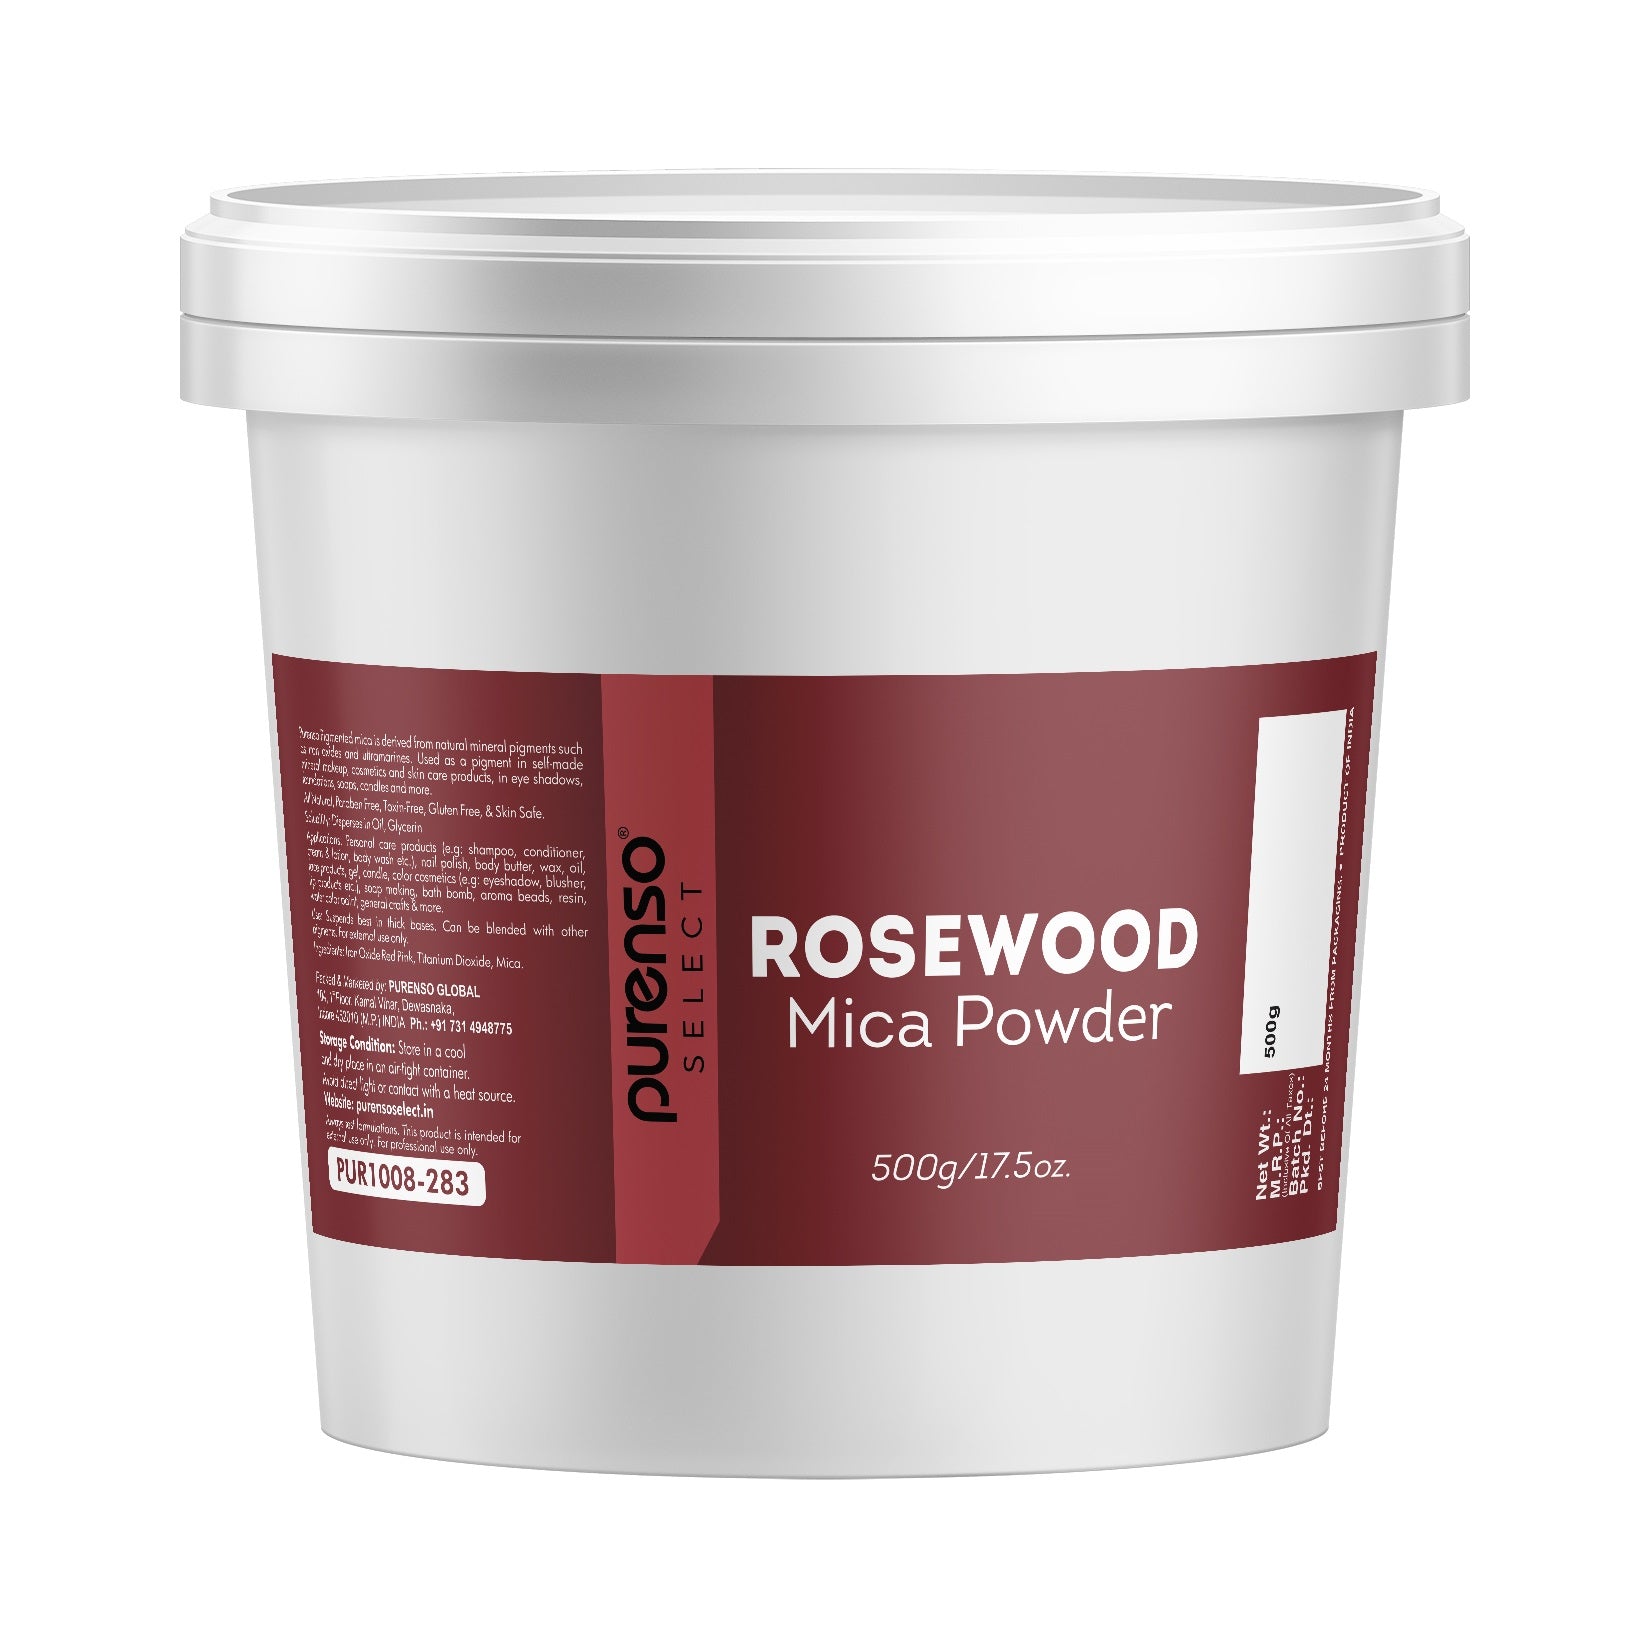 Rosewood Mica Powder